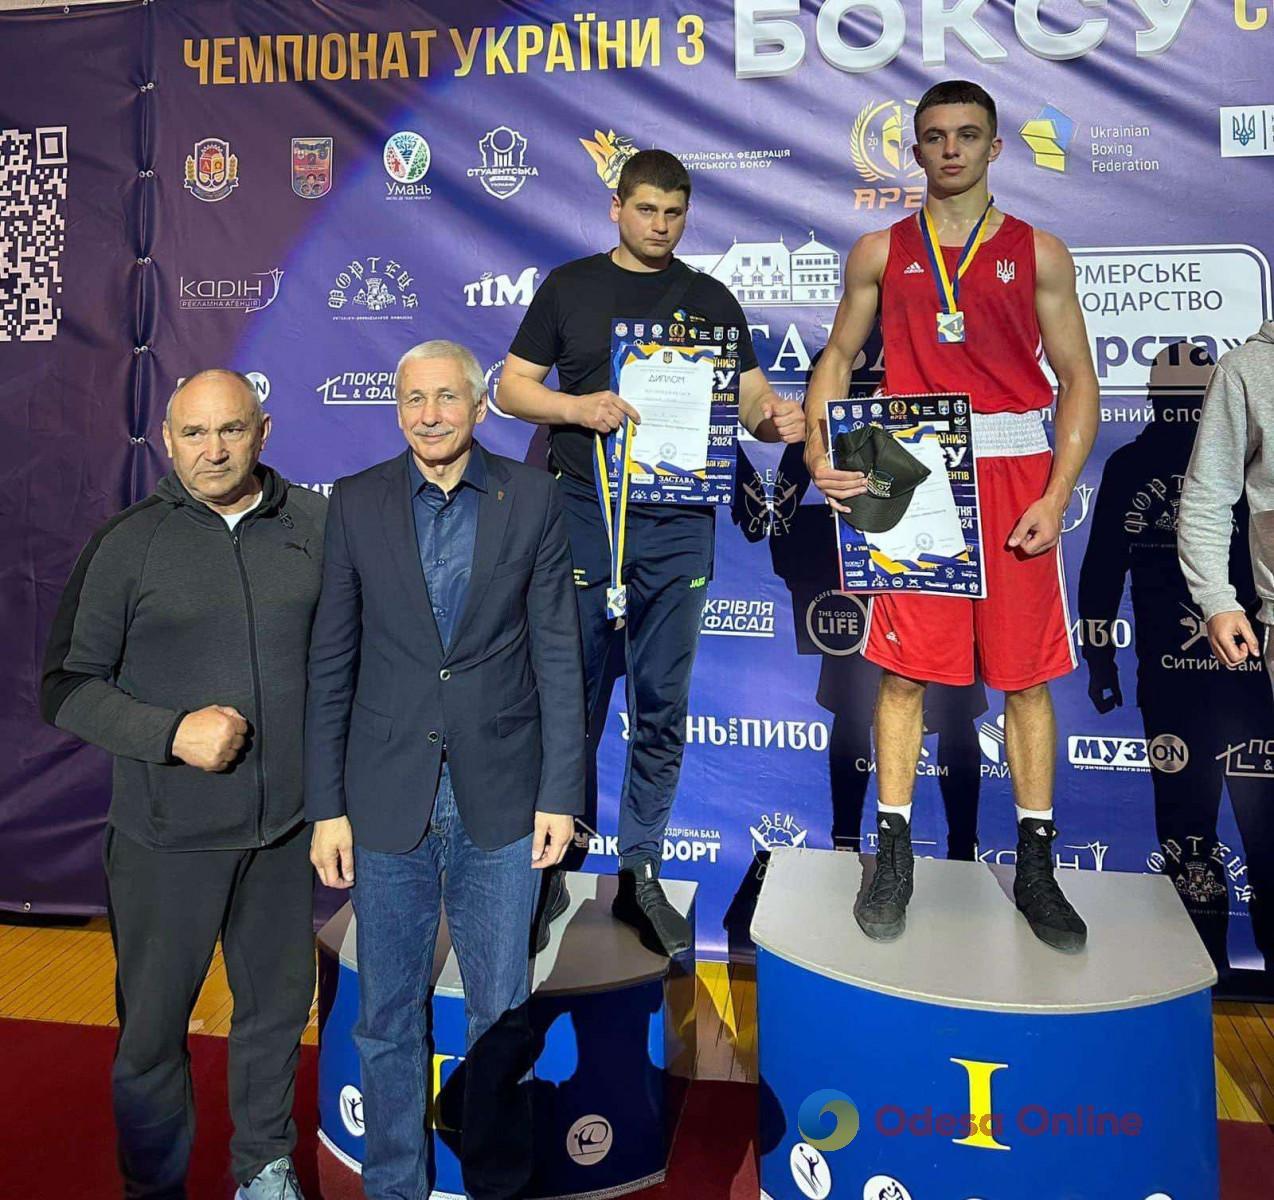 Одеські спортсмени повернулися з чемпіонату України з боксу з чотирма медалями